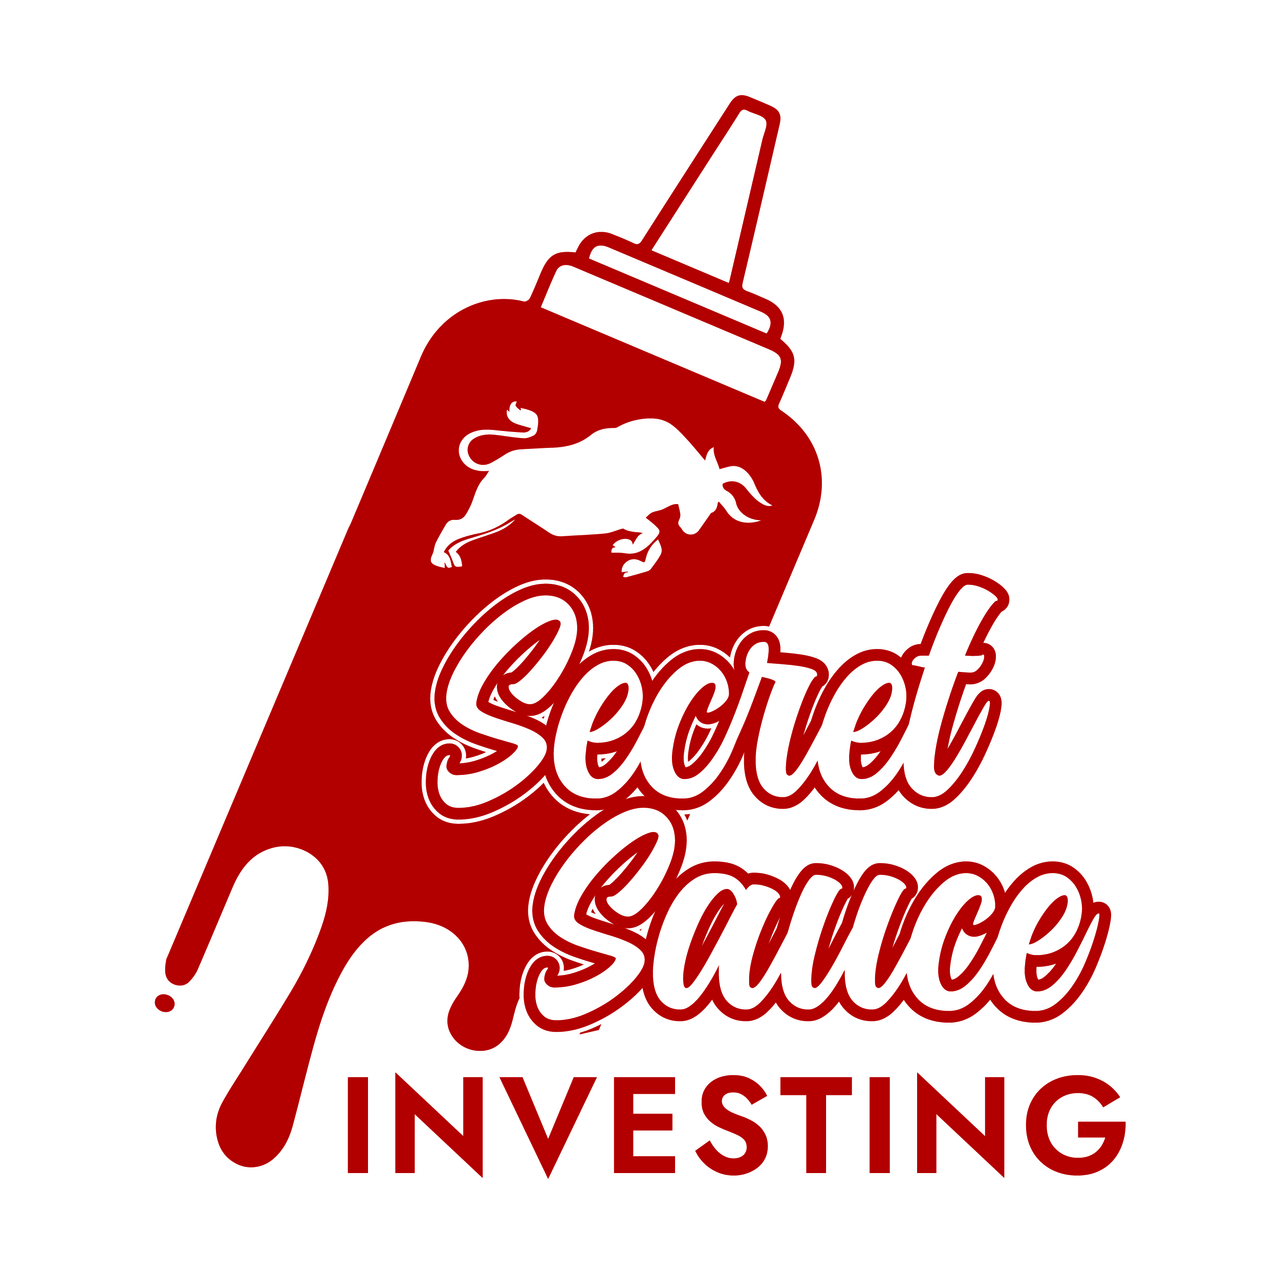 Secret Sauce Investing